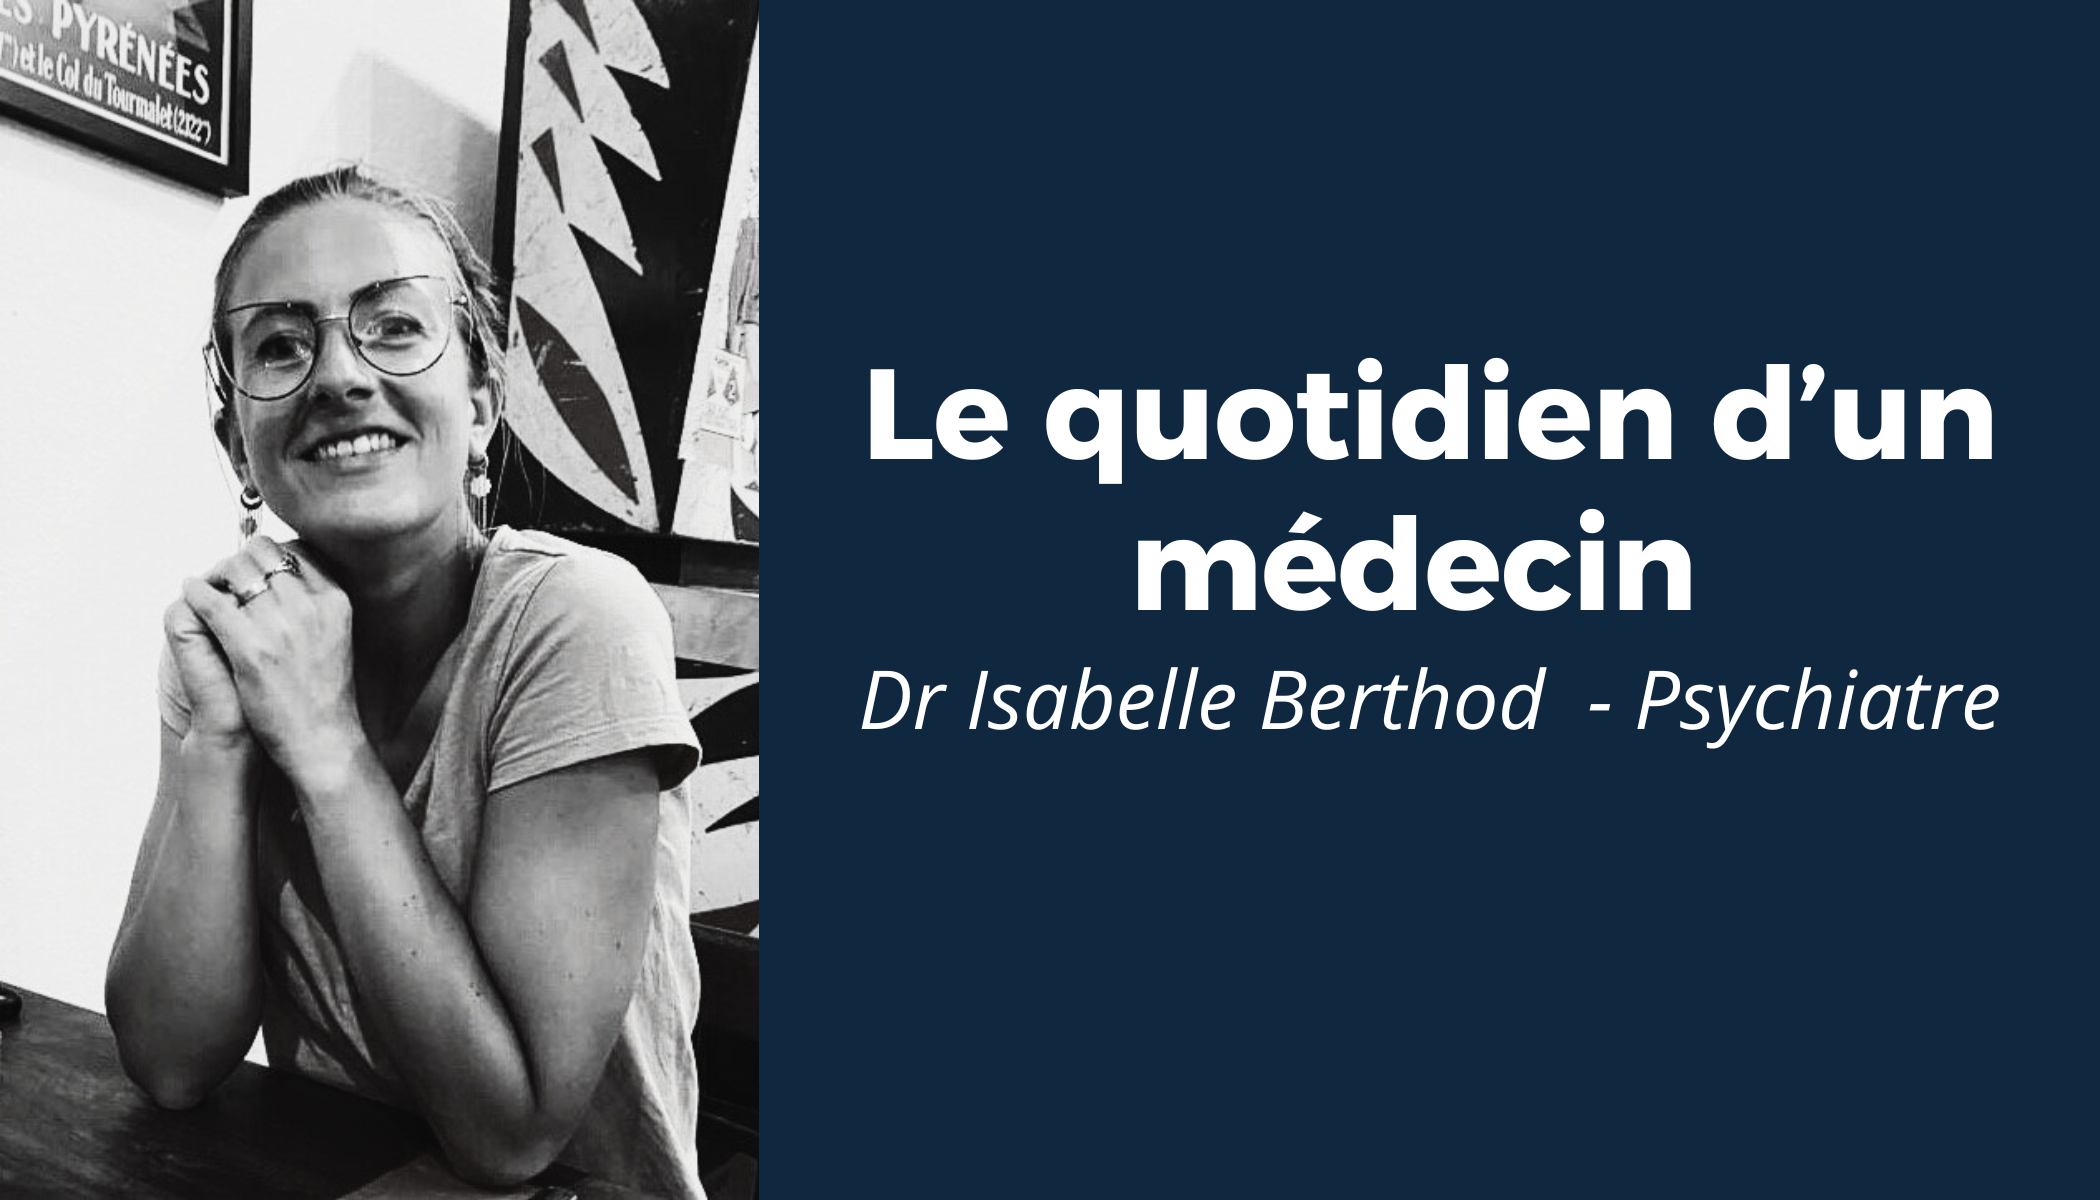 “Le quotidien d’un médecin” #3 - Rencontre avec le Dr Isabelle Berthod 